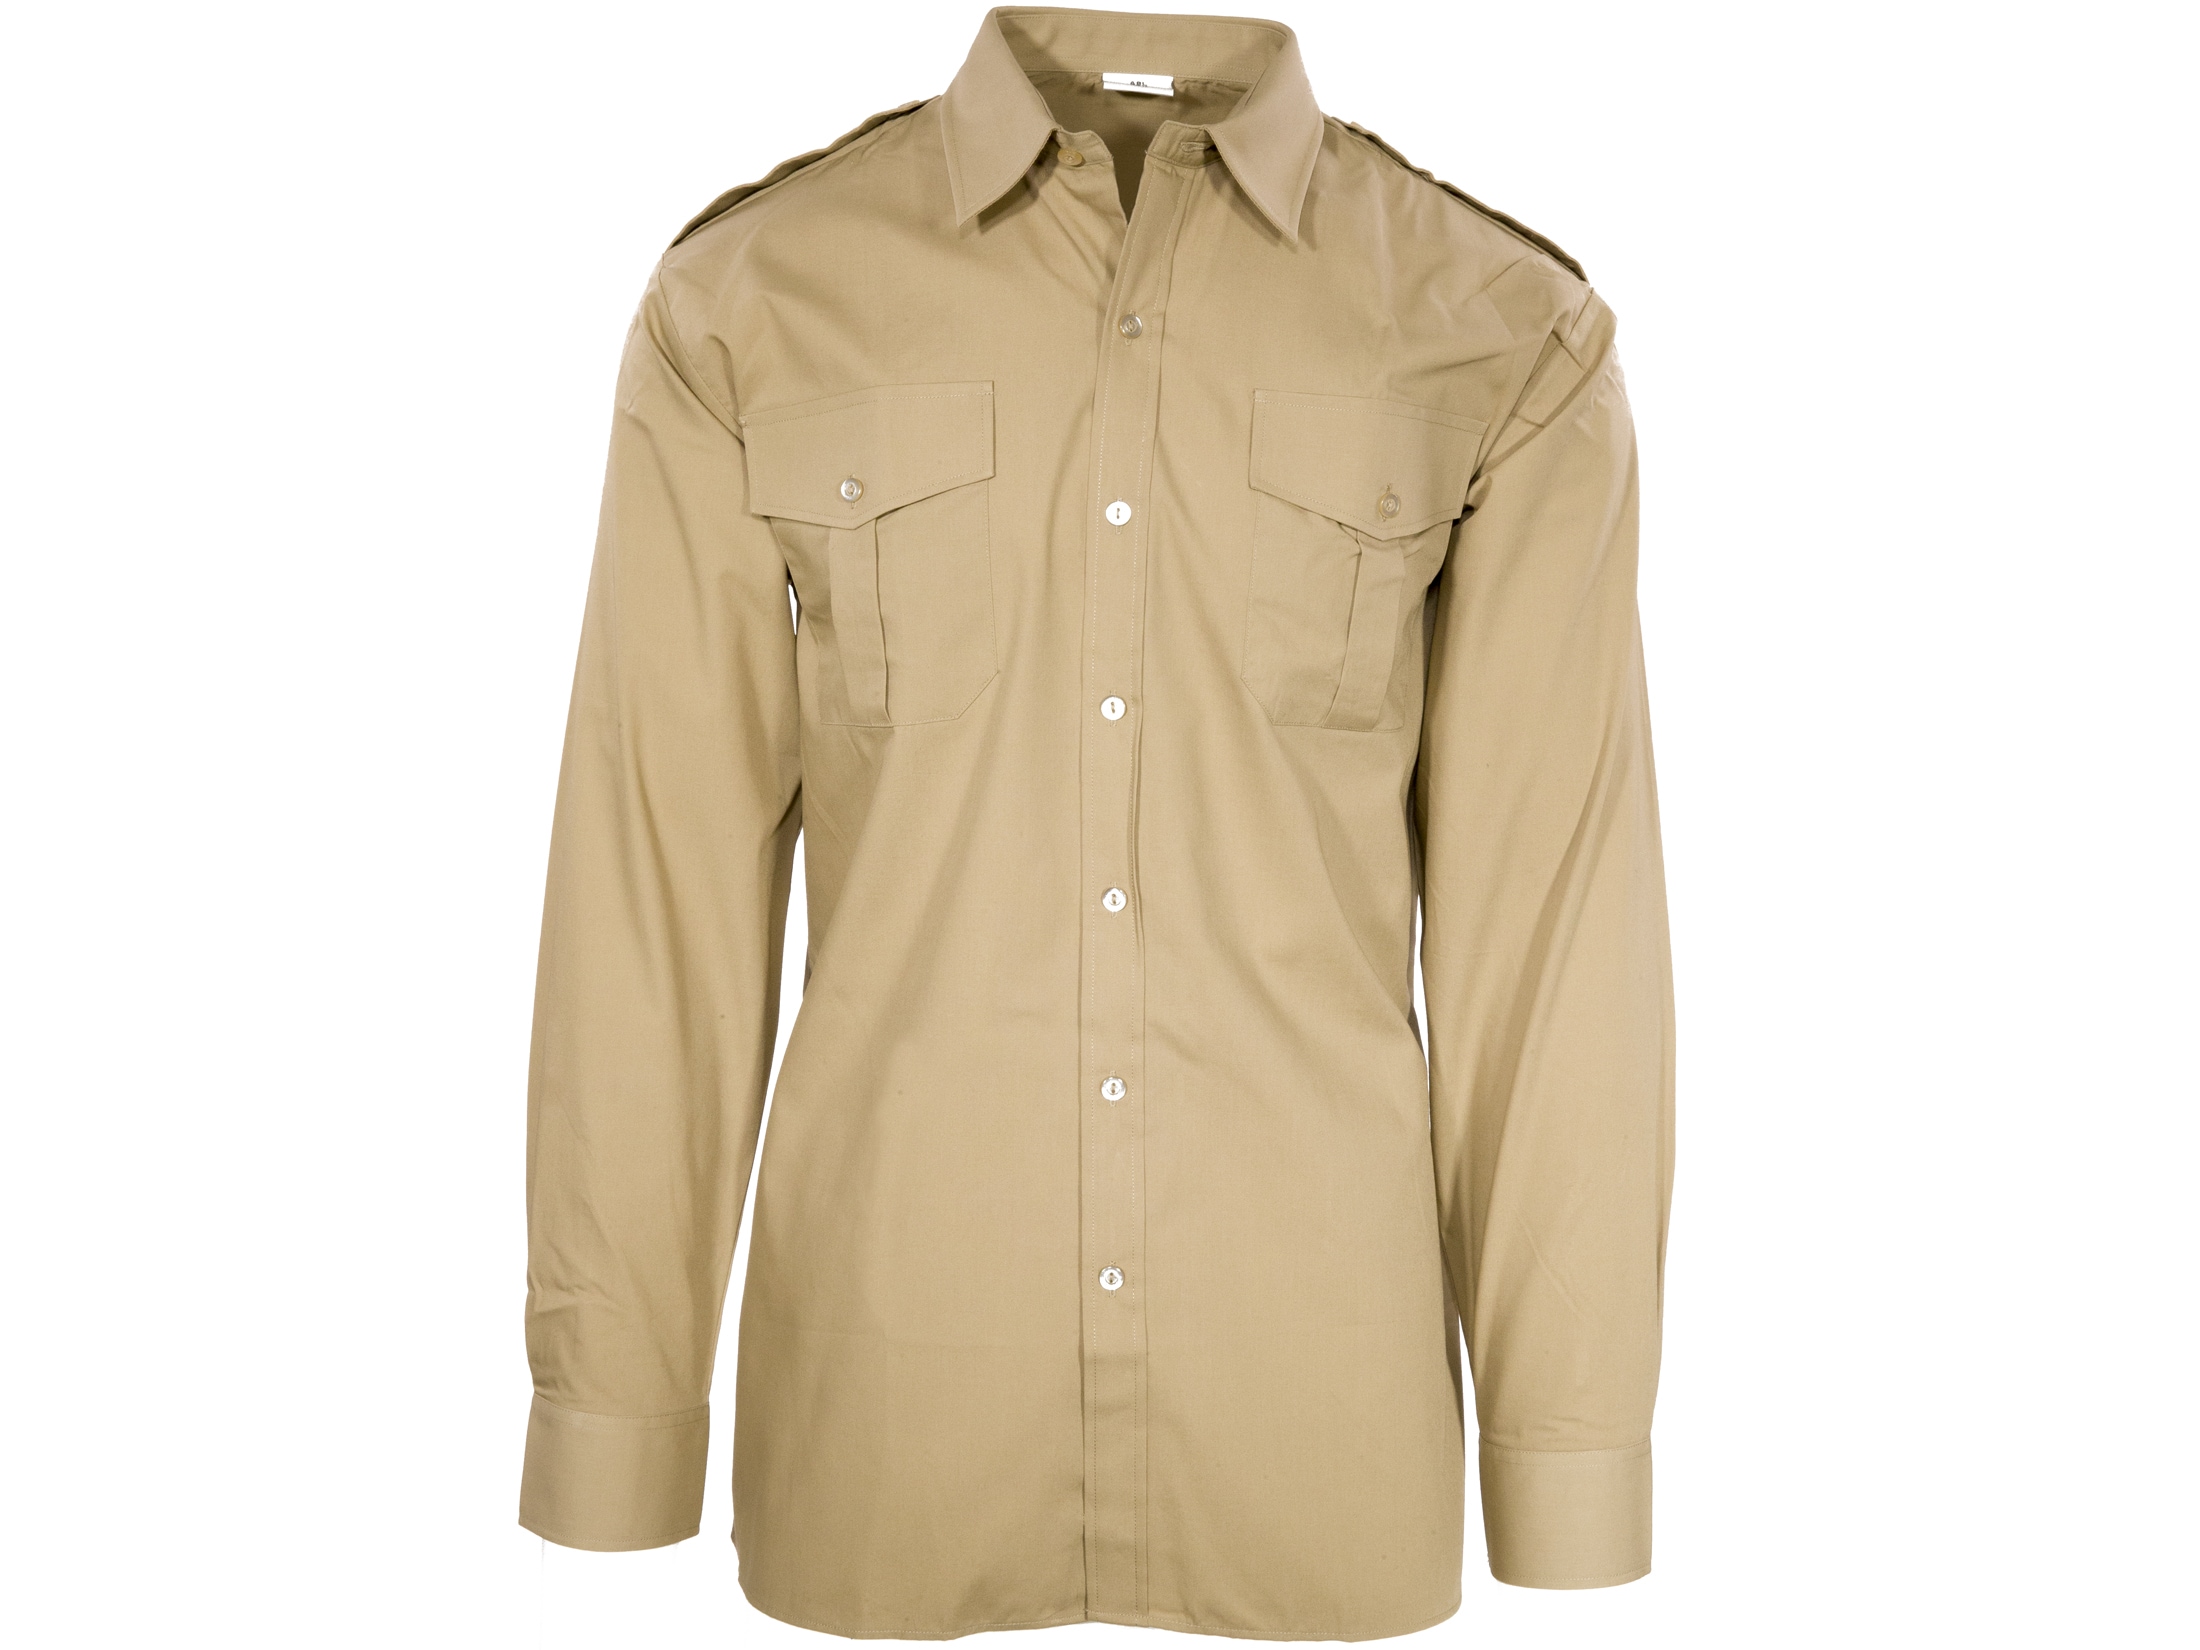 Vintage Unissued Belgian army fieldshirt shirt jacket olive khaki military 